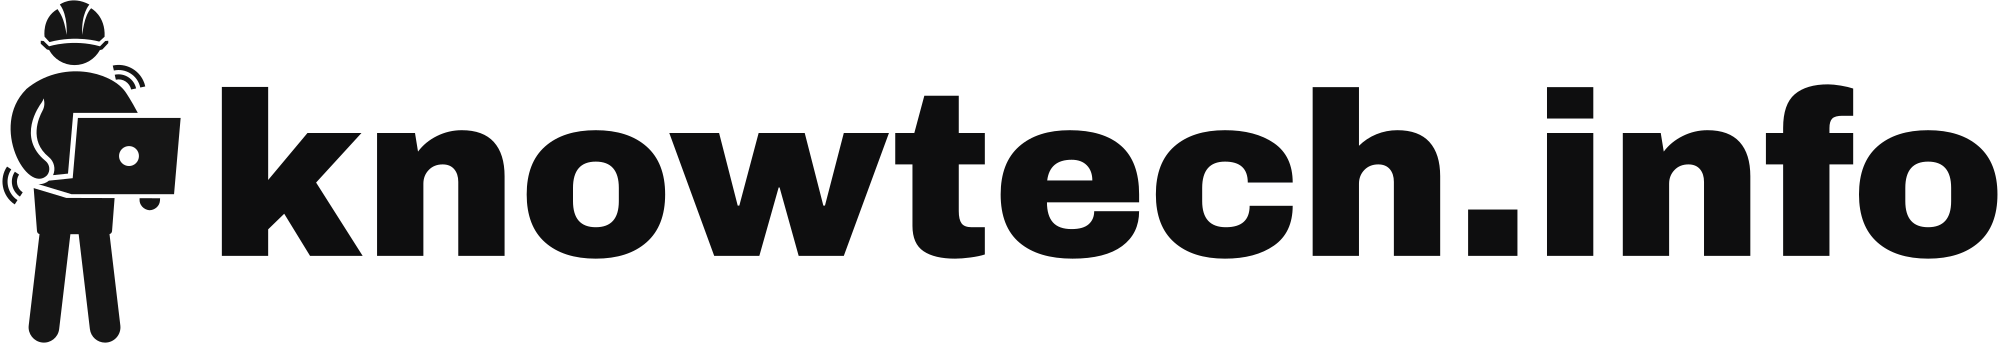 Knowtechinfo logo